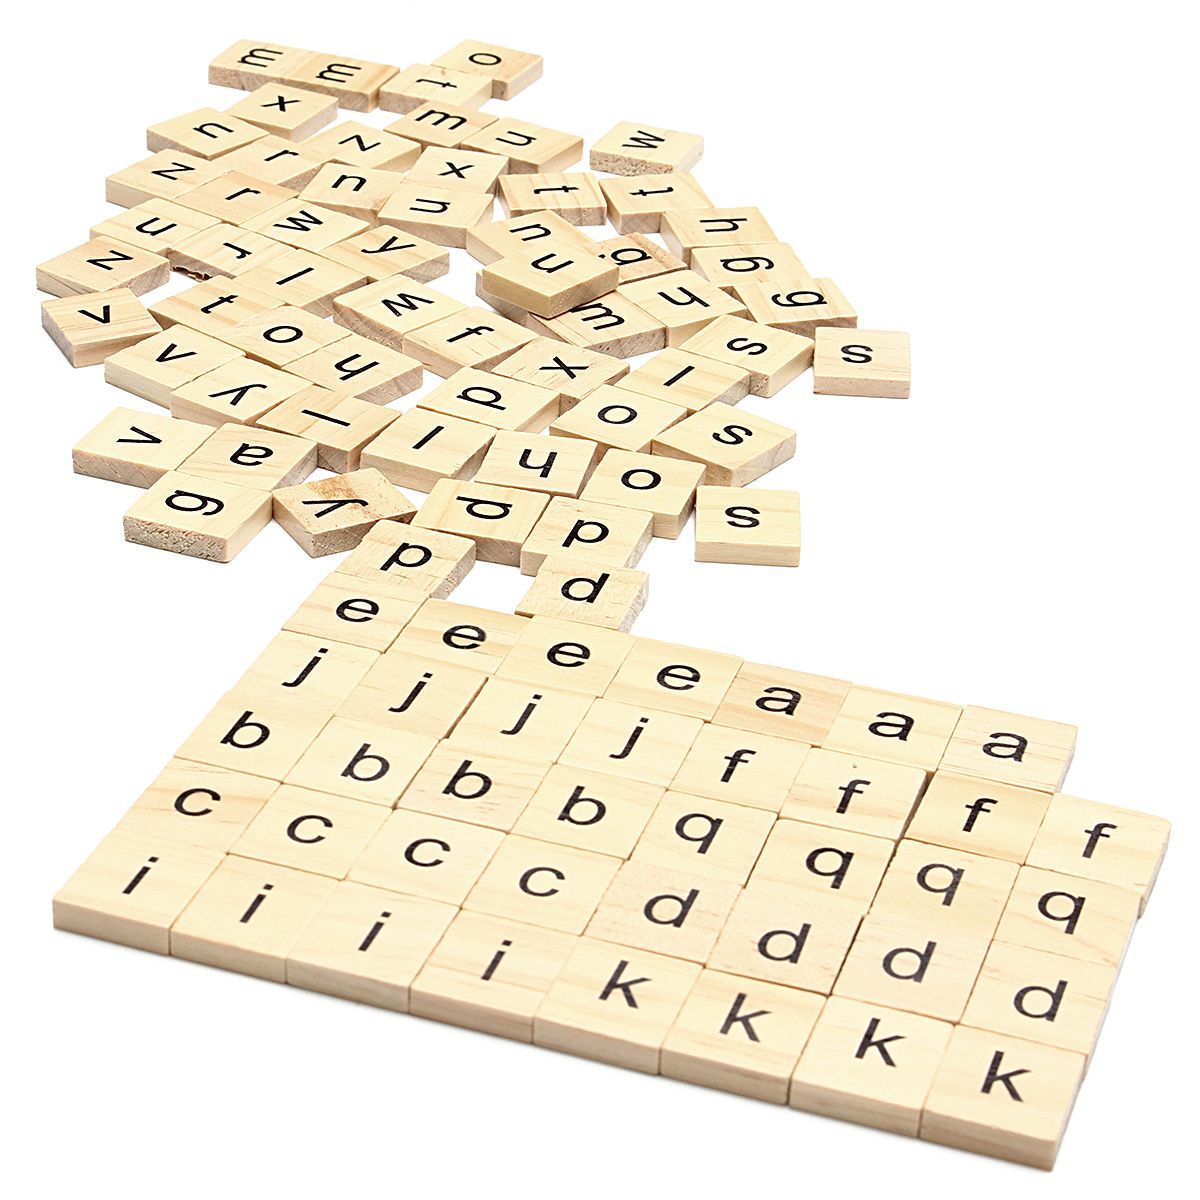 100pcs-School-Wooden-Scrabble-Tiles-Letters-Wedding-Pendants-Craft-Complete-Set-Decor-Supplies-1405999